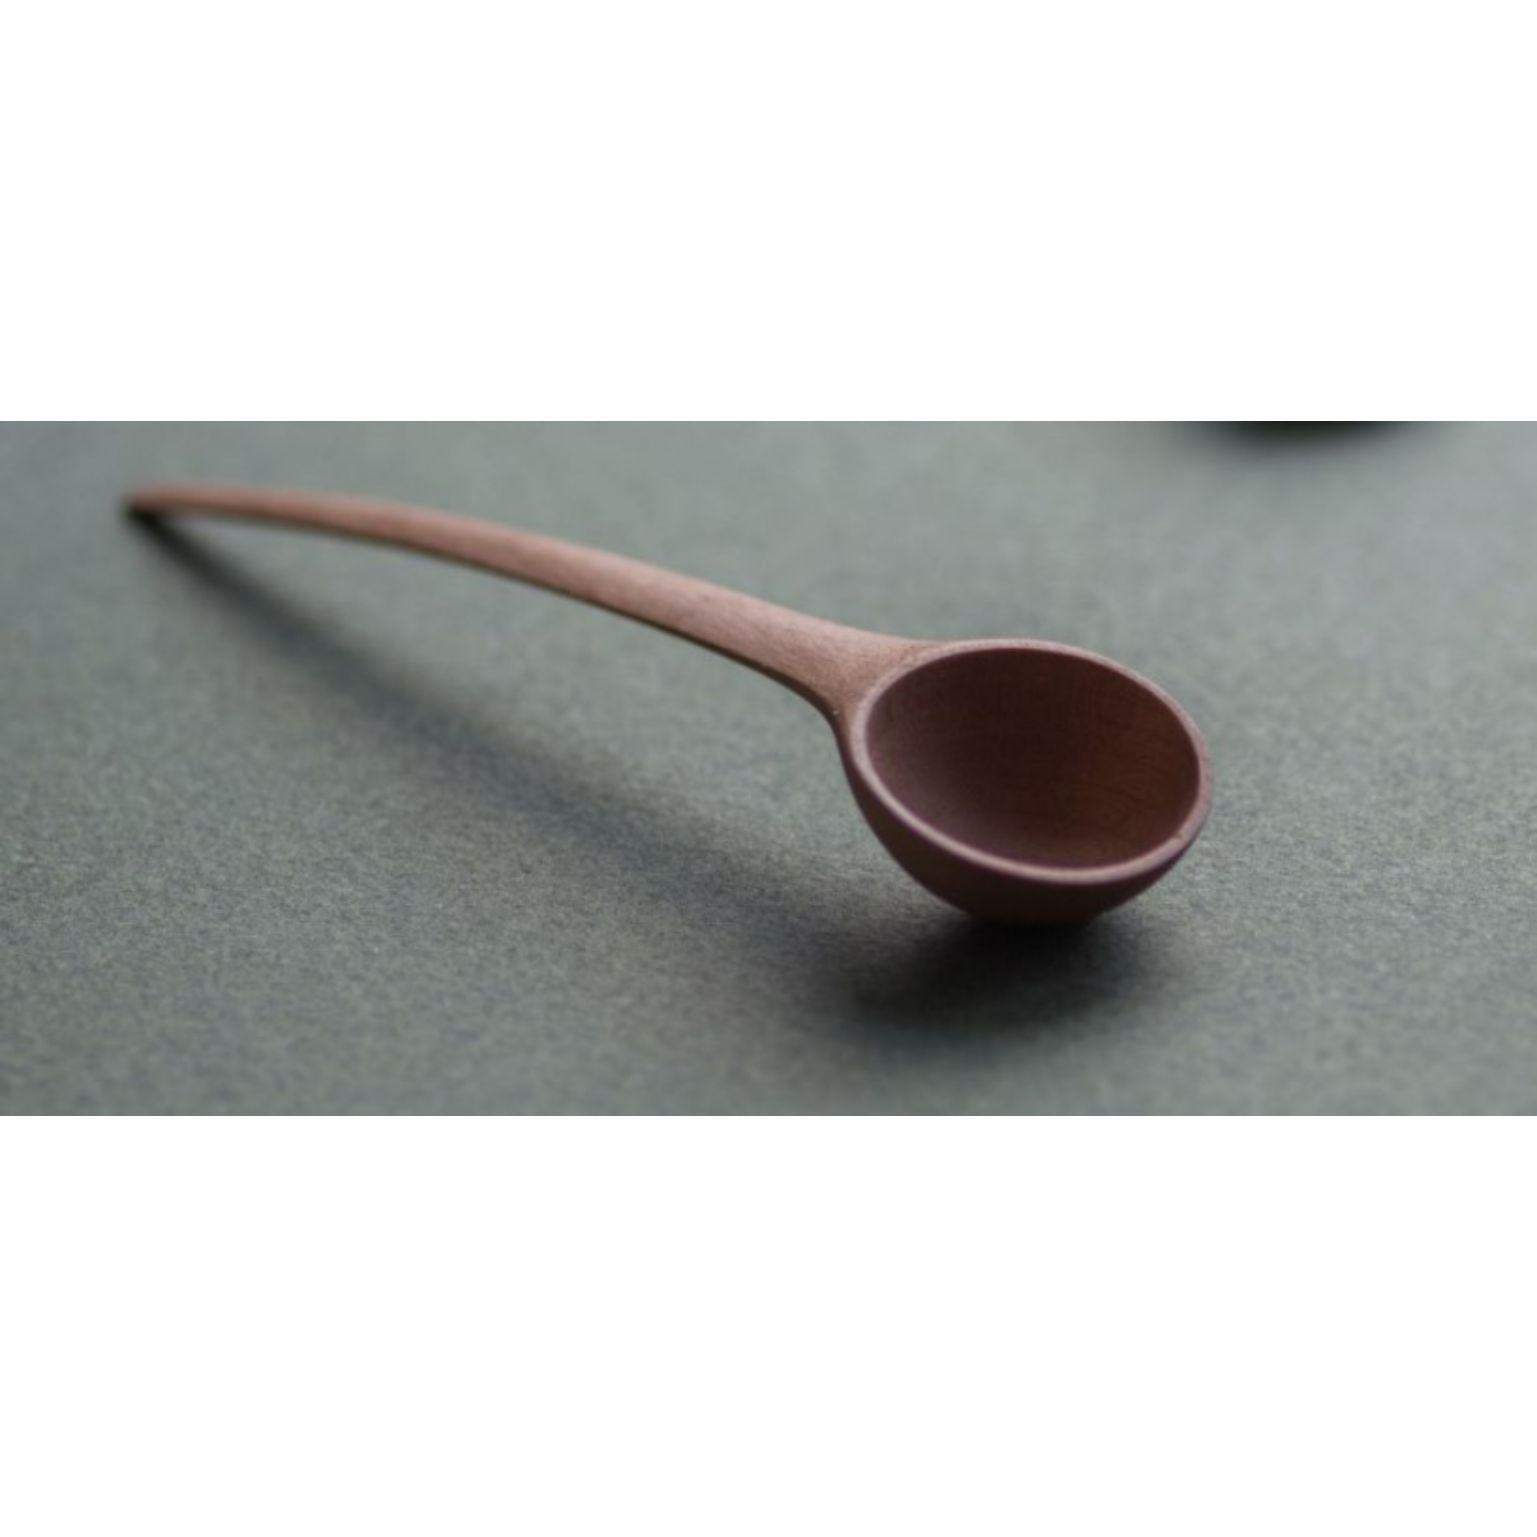 Finnish Pisara Spoon, Medium by Antrei Hartikainen